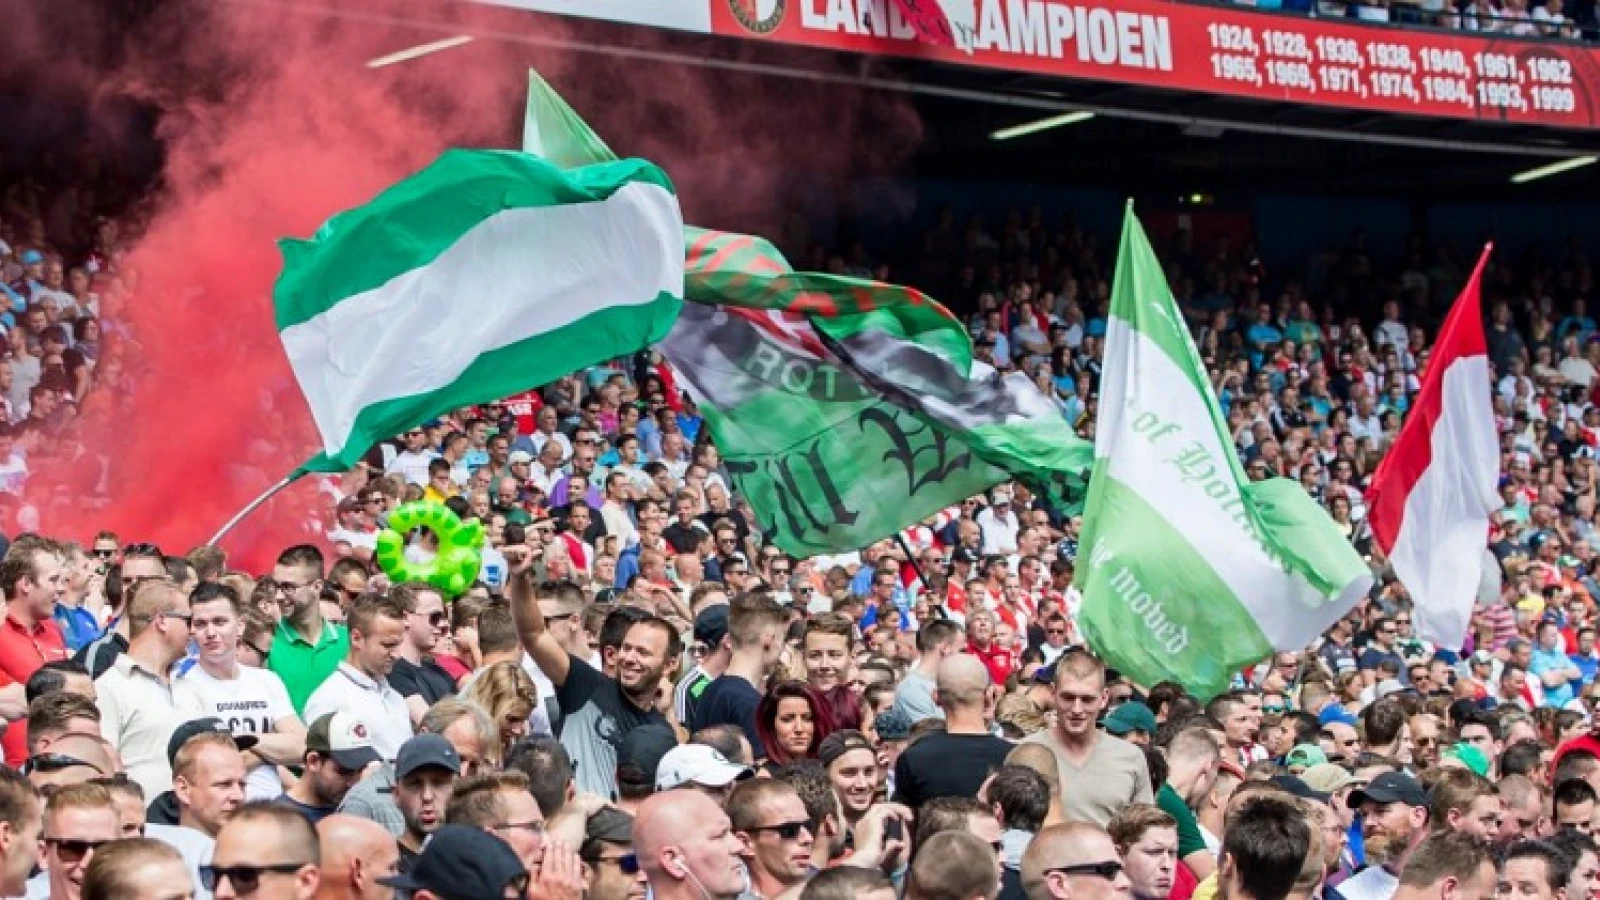 Volgende week pas meer duidelijkheid over Feyenoord-supporters bij uitwedstrijd tegen Napoli